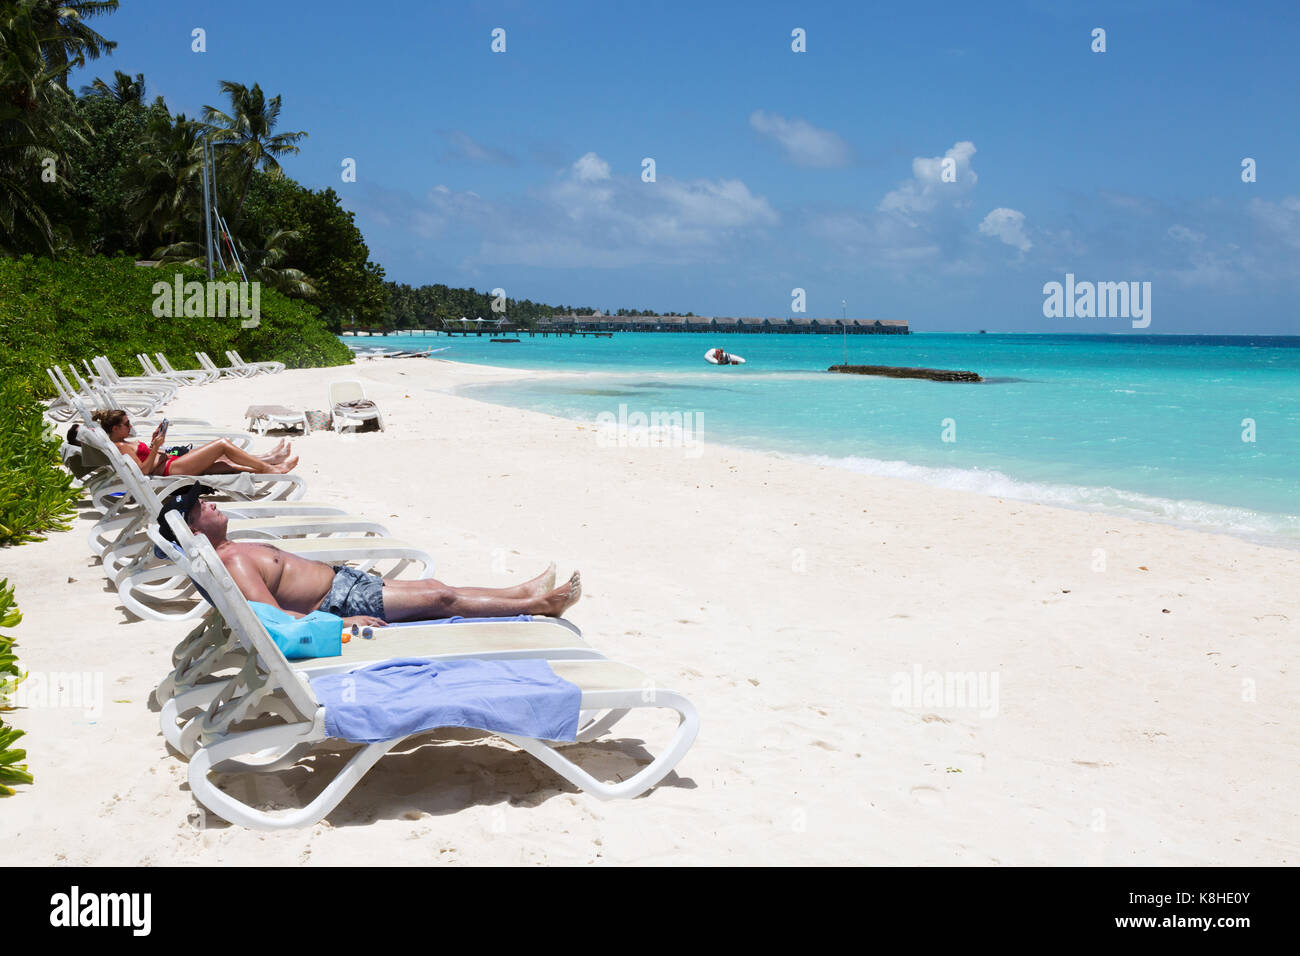 Maldives beach - touristes bronzer sur la plage, l'hôtel Kuramathi resort, les Maldives, l'Asie Banque D'Images